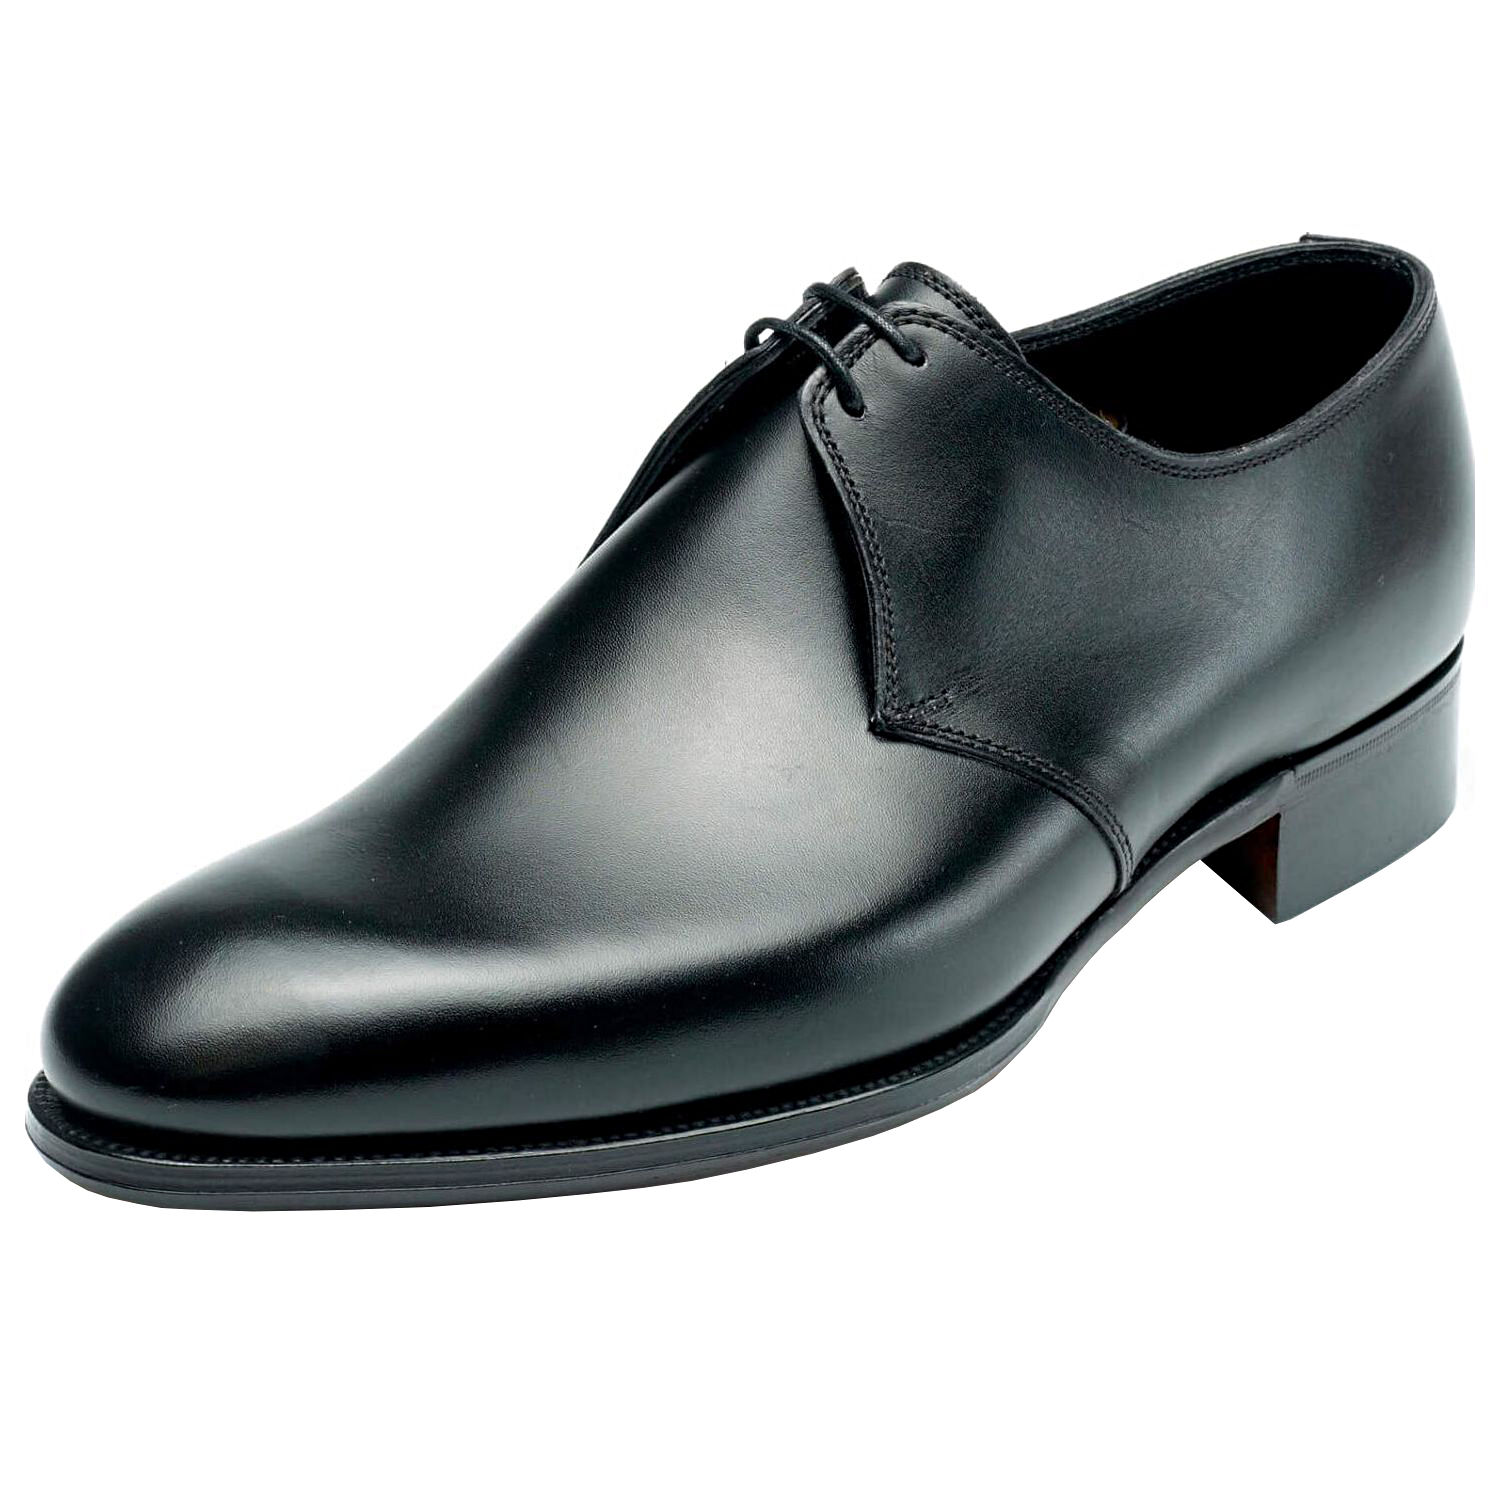 Alfred Sargent Pimlico - Pediwear Footwear